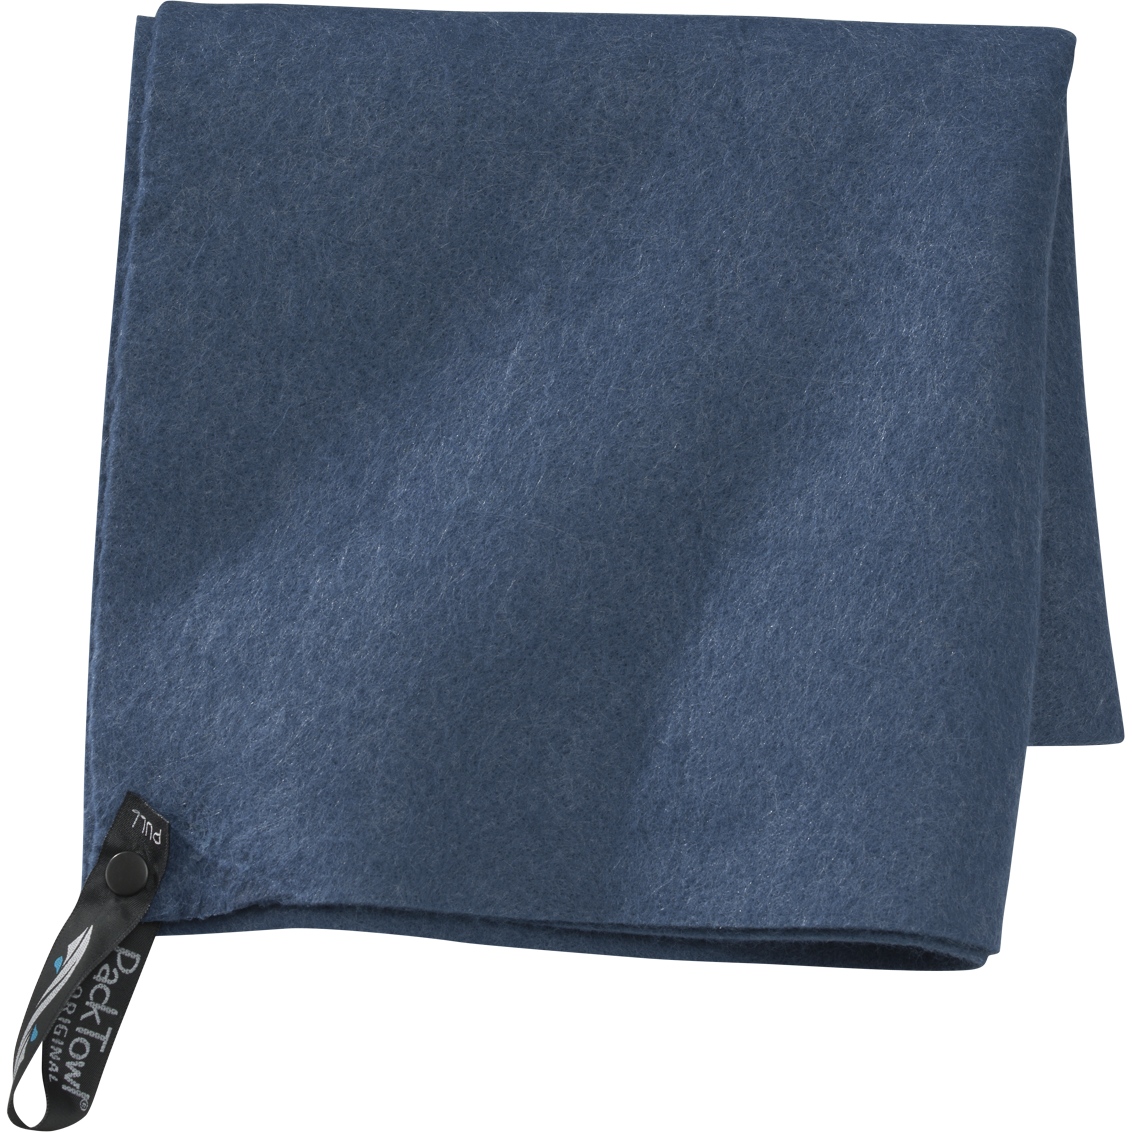 Produktbild von PackTowl Original M - Handtuch - blau